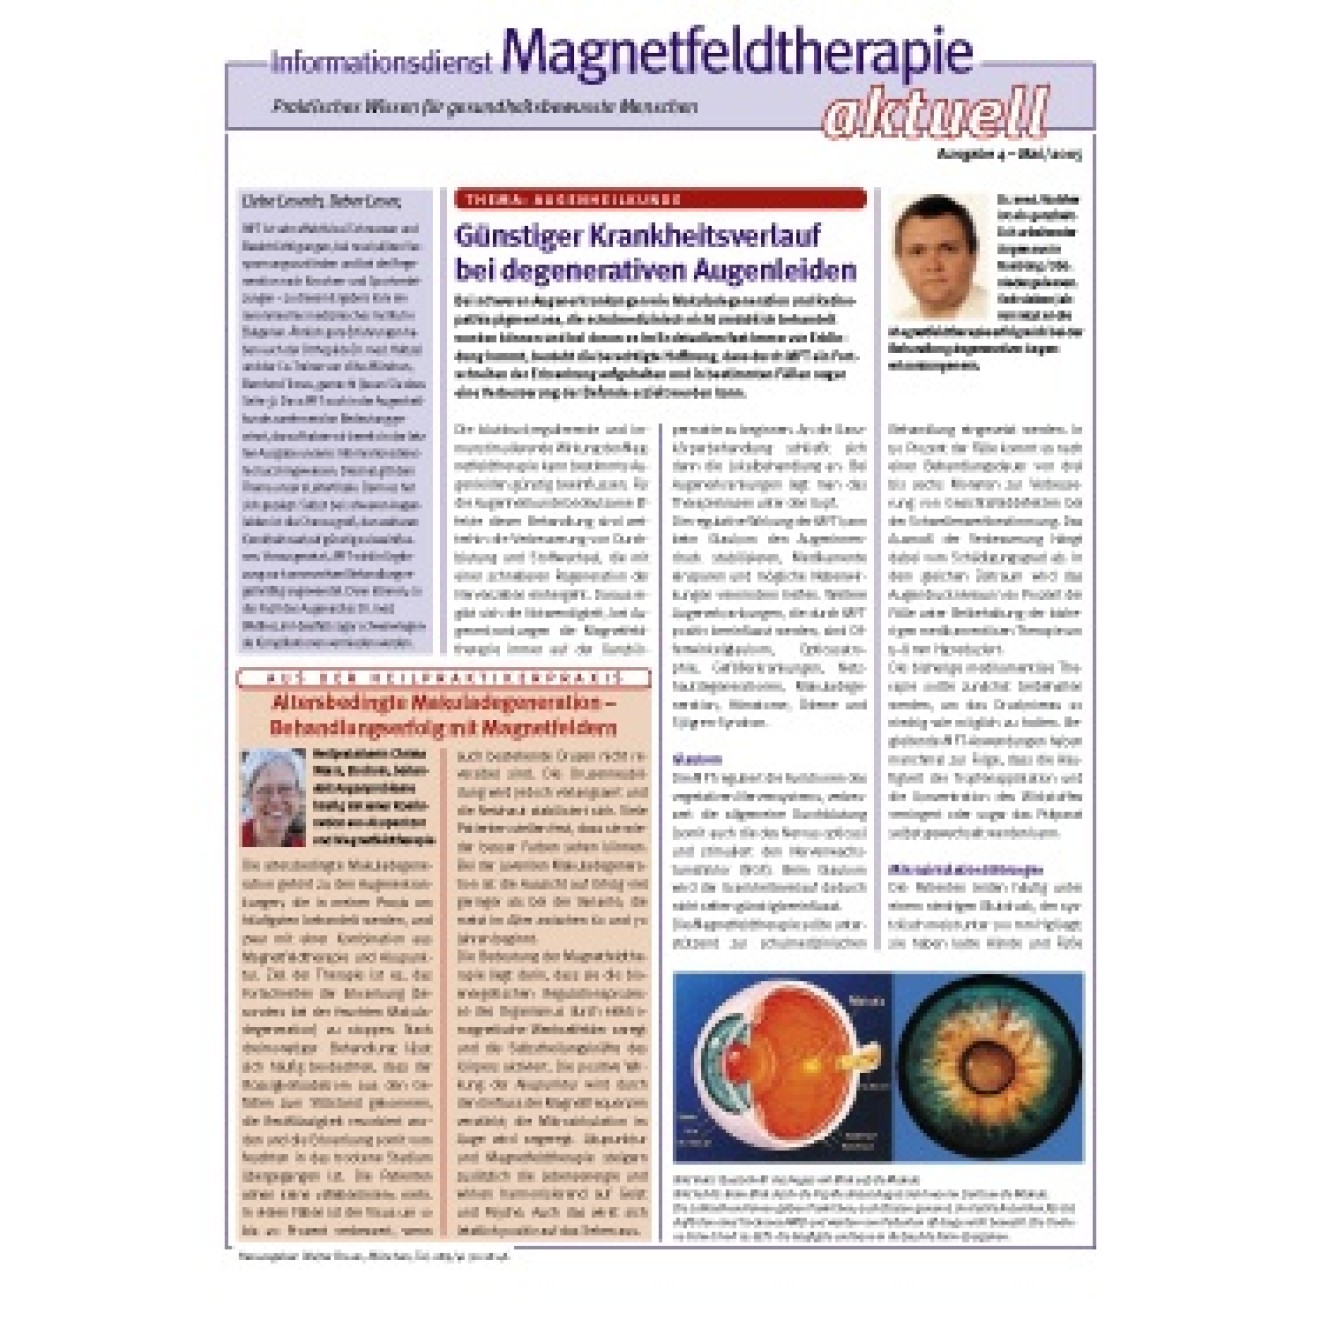 Informationsdienst Magnetfeldtherapie aktuell gemischt